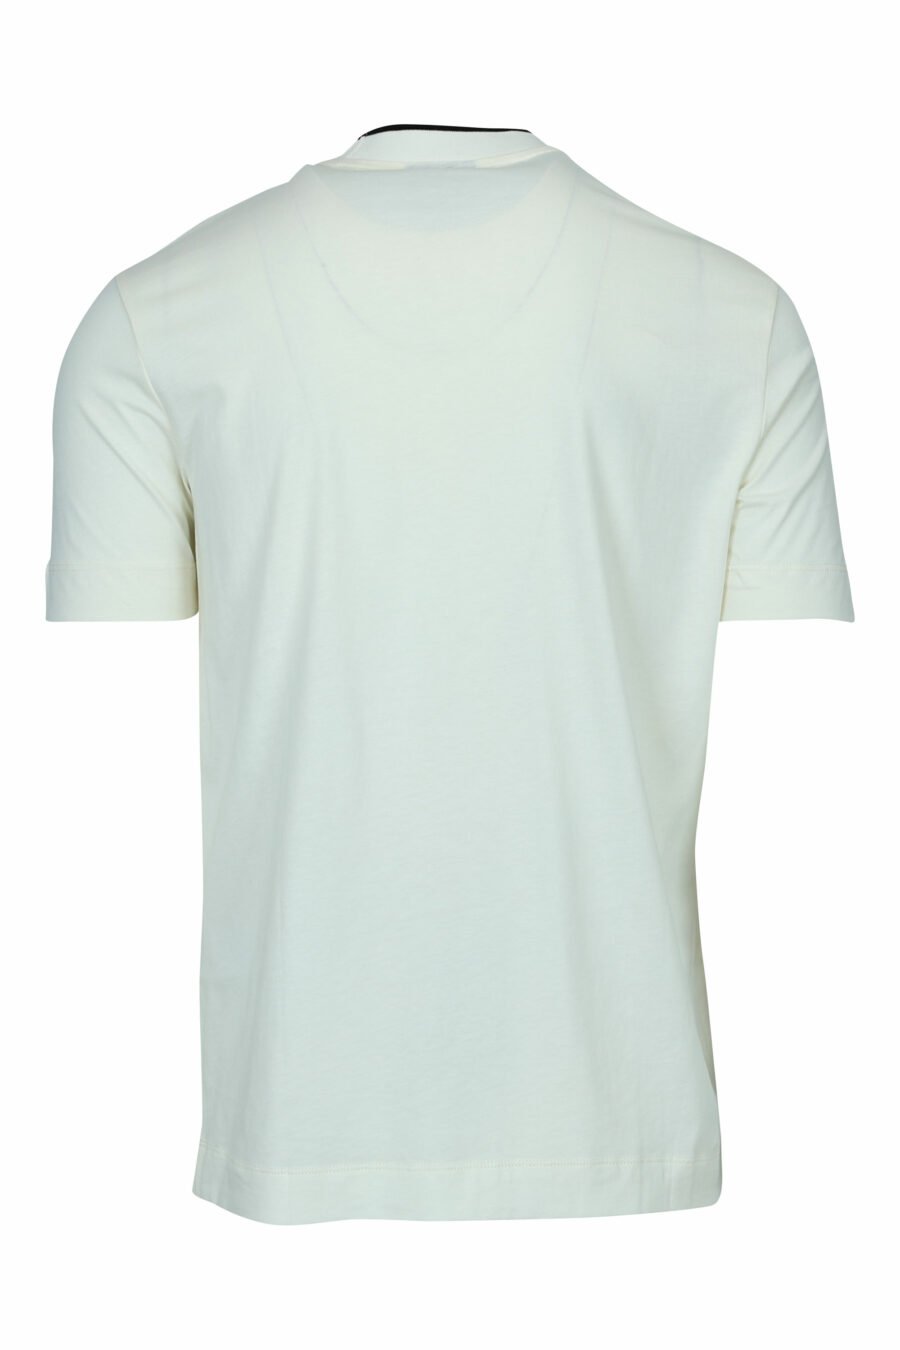 Camiseta color crema con minilogo "emporio" centrado - 8057970991724 1